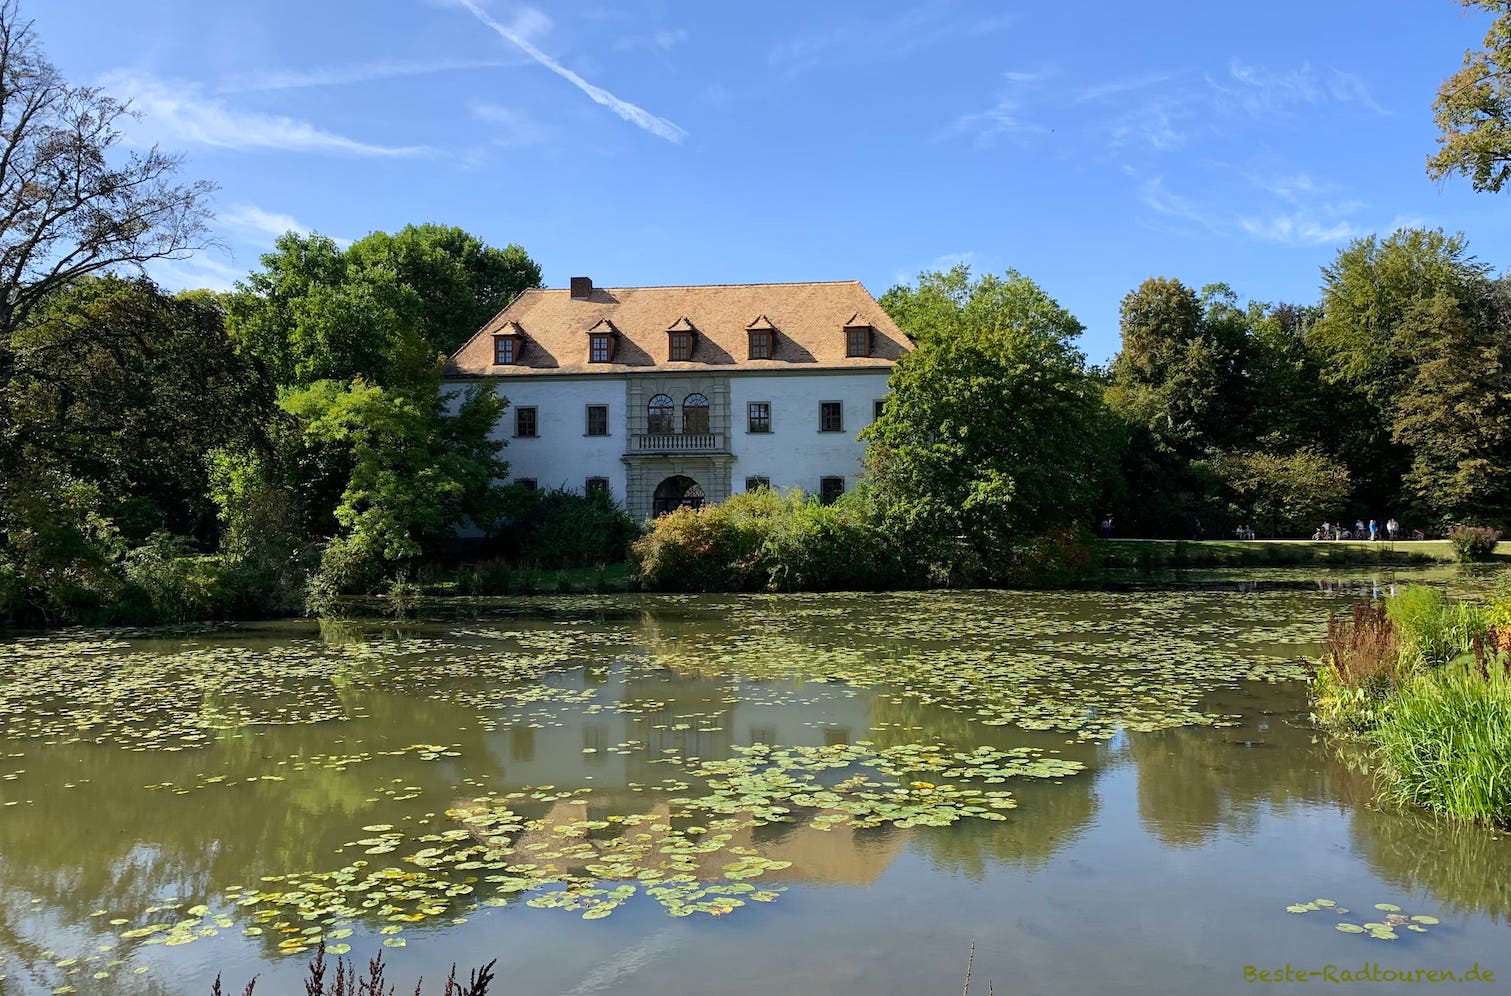 Foto über den Teich: Fürst-Pückler-Park Bad Muskau, Altes Schloss